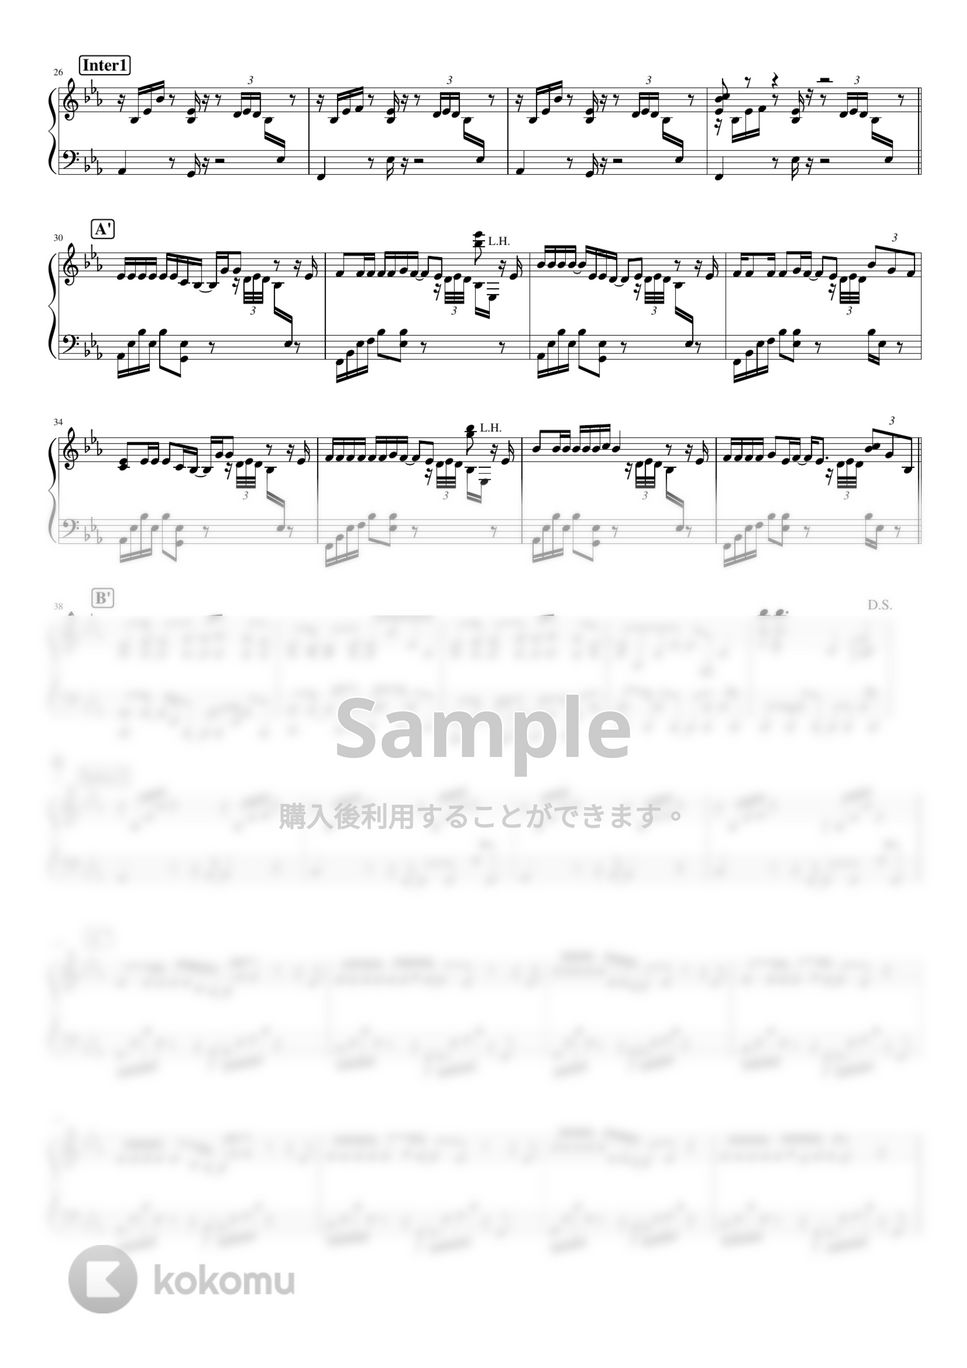 ヨルシカ - 風を食む by pianomikan